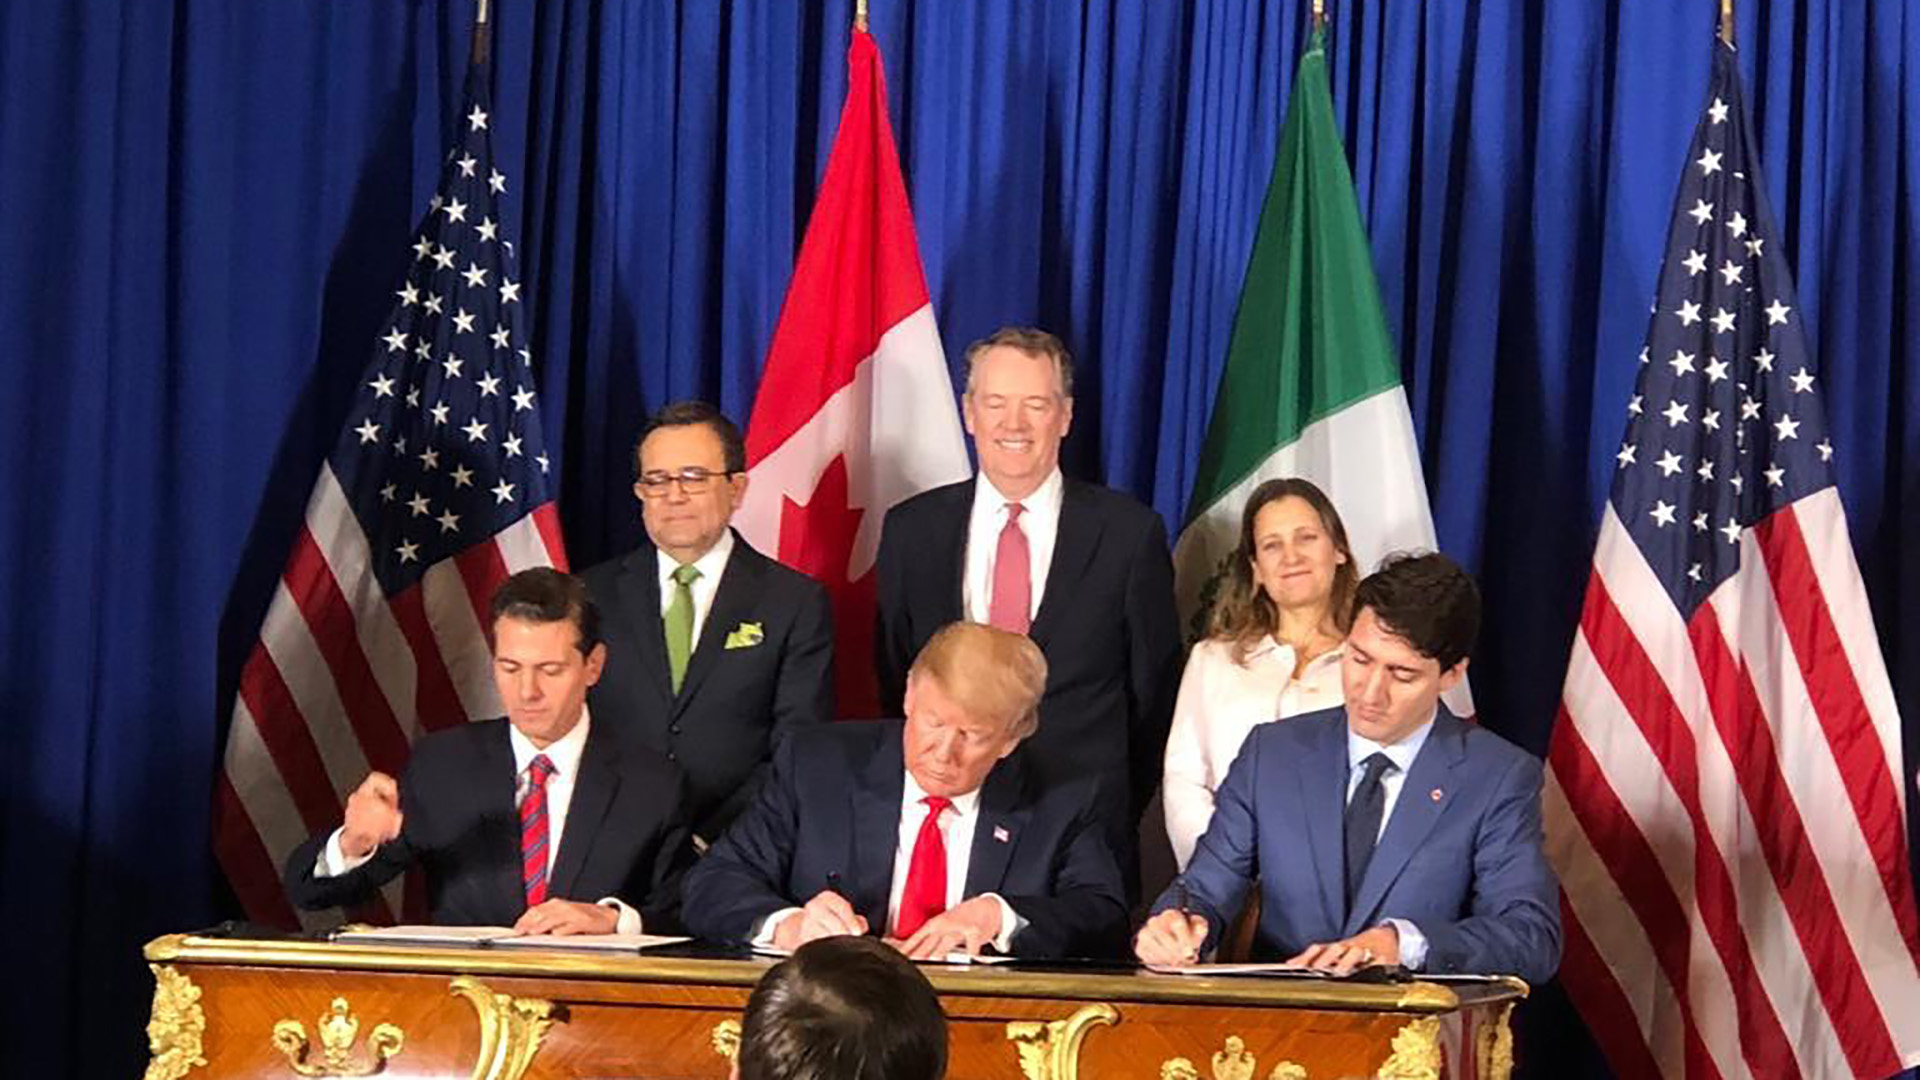 Estados Unidos, México y Canadá firmaron su nuevo acuerdo de libre comercio conocido como T-MEC (Télam)